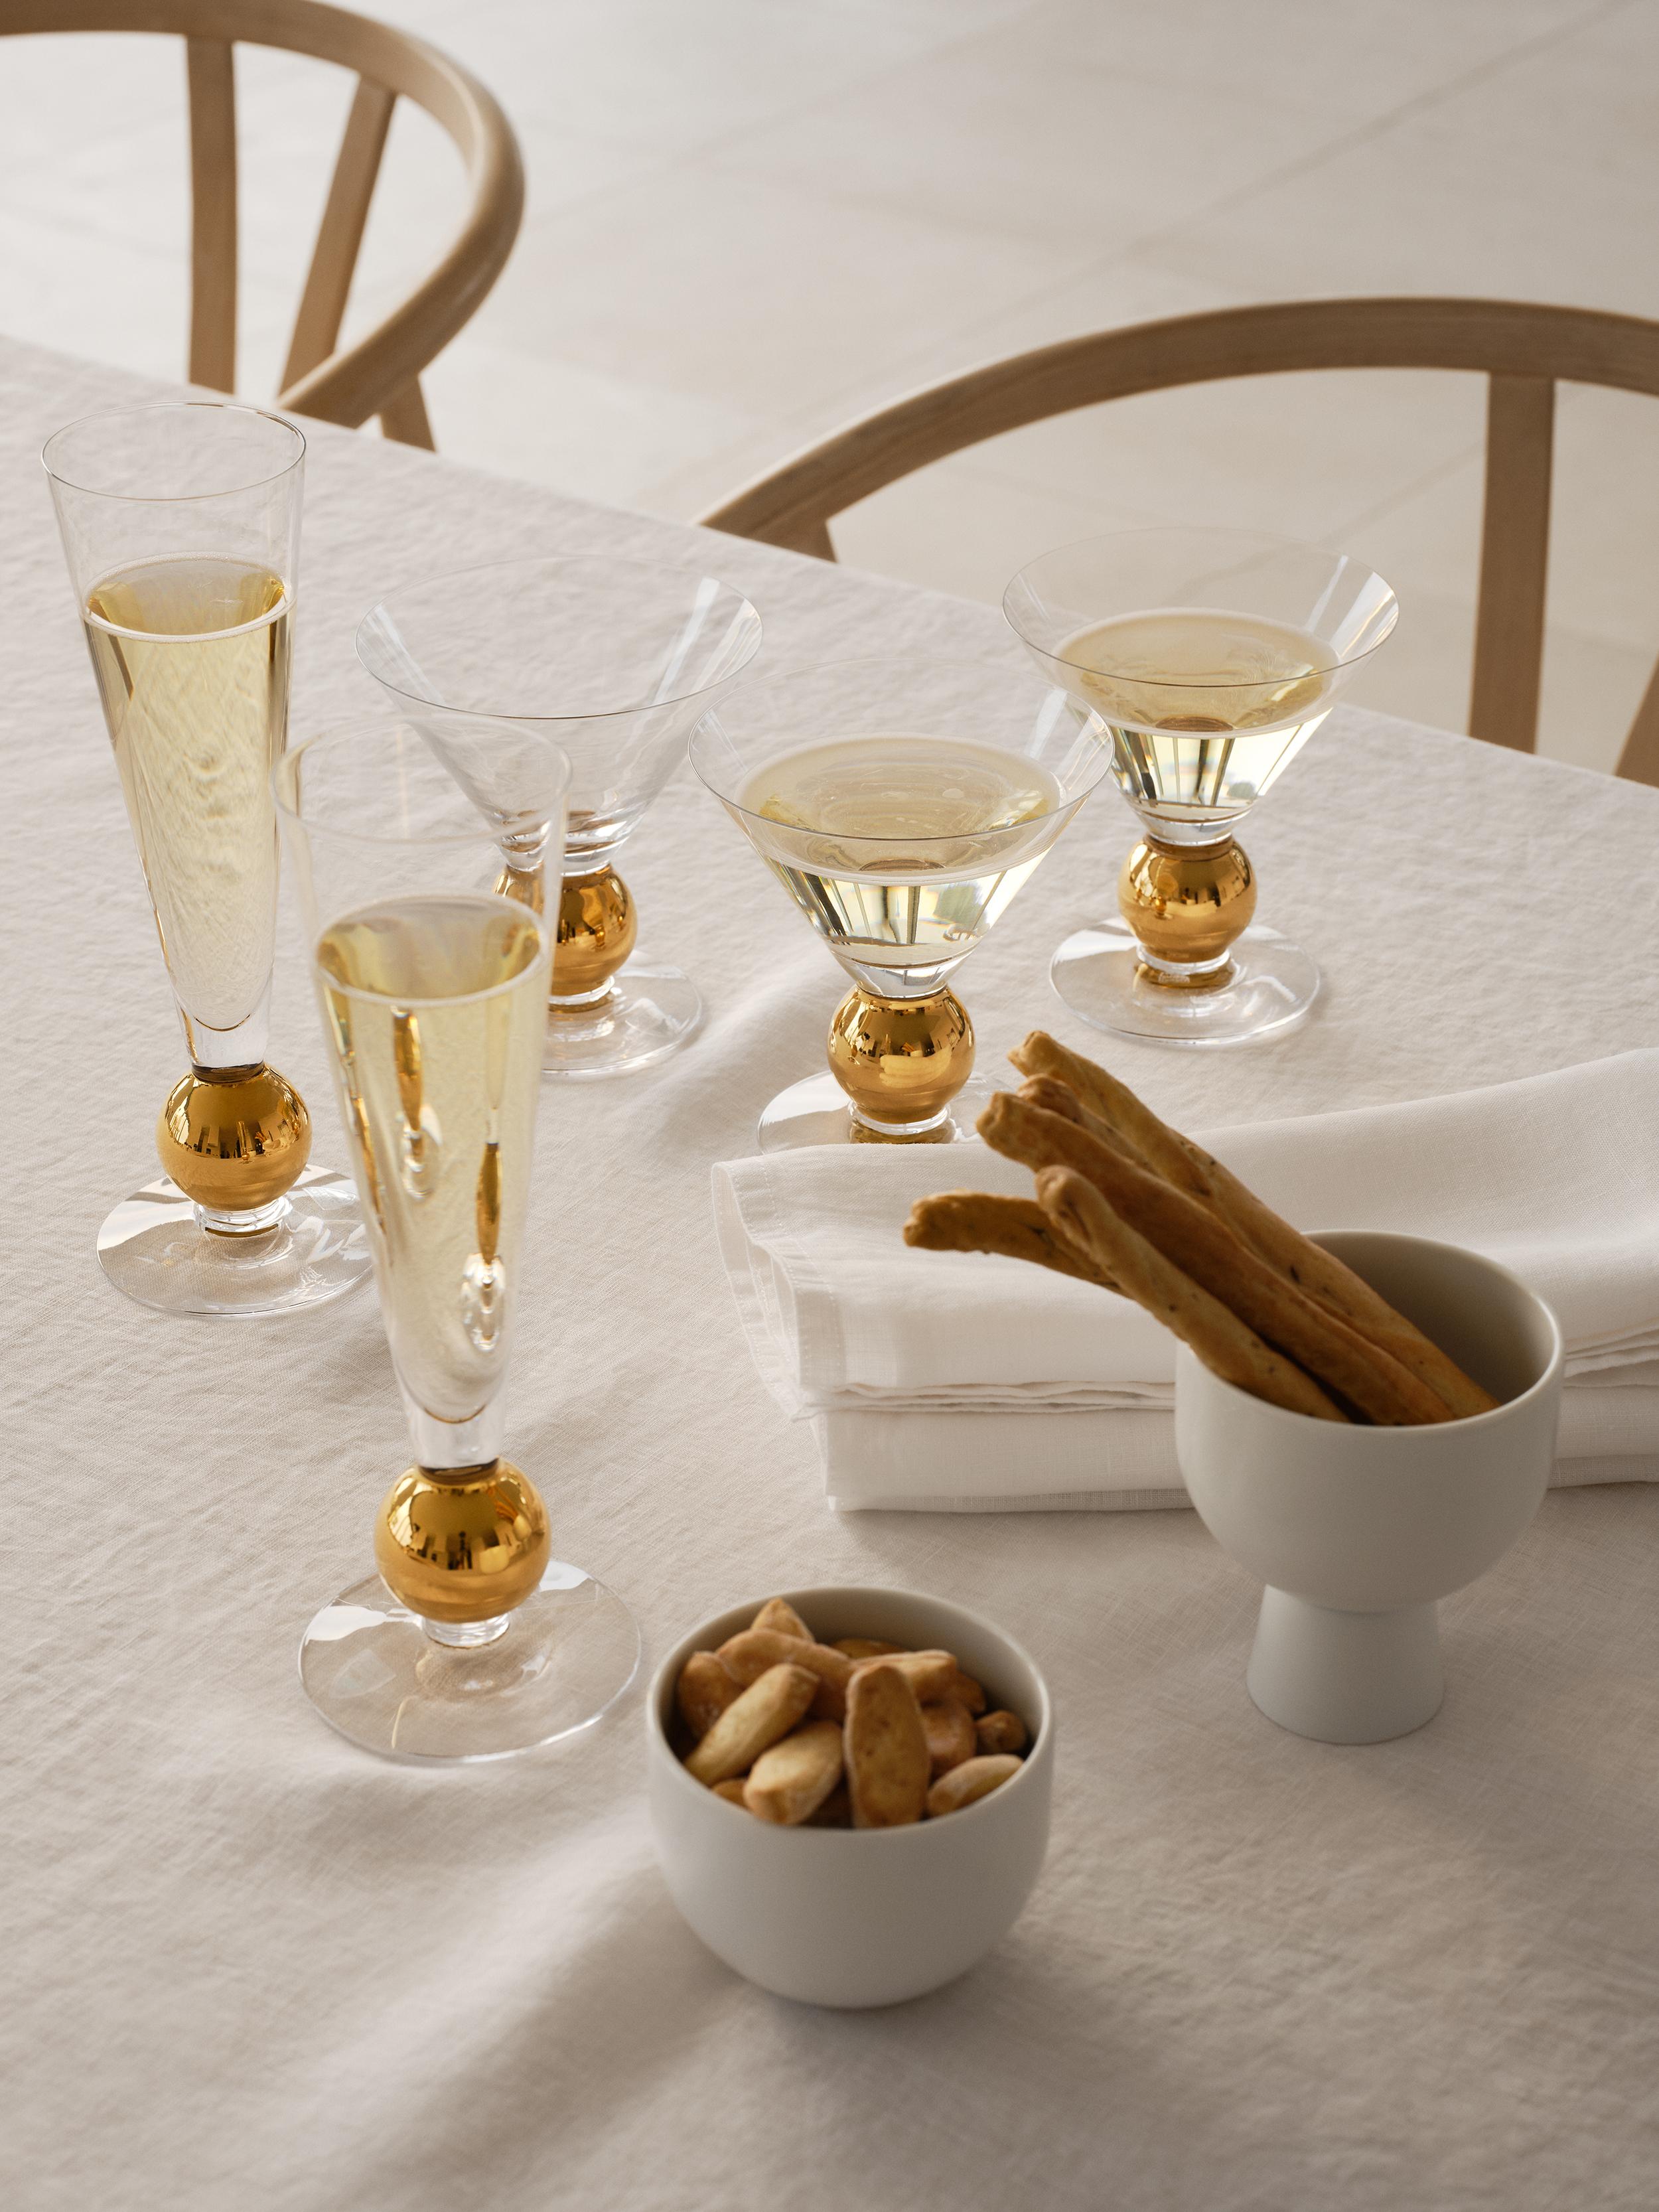 En 1991, Gunnar Cyrén a conçu le verre à martini Nobel pour le 90e anniversaire du prix Nobel. Le verre en cristal, d'une contenance de 7,8 oz, est peint à la main avec des détails en or véritable 21 carats. La forme du bol est idéale pour servir